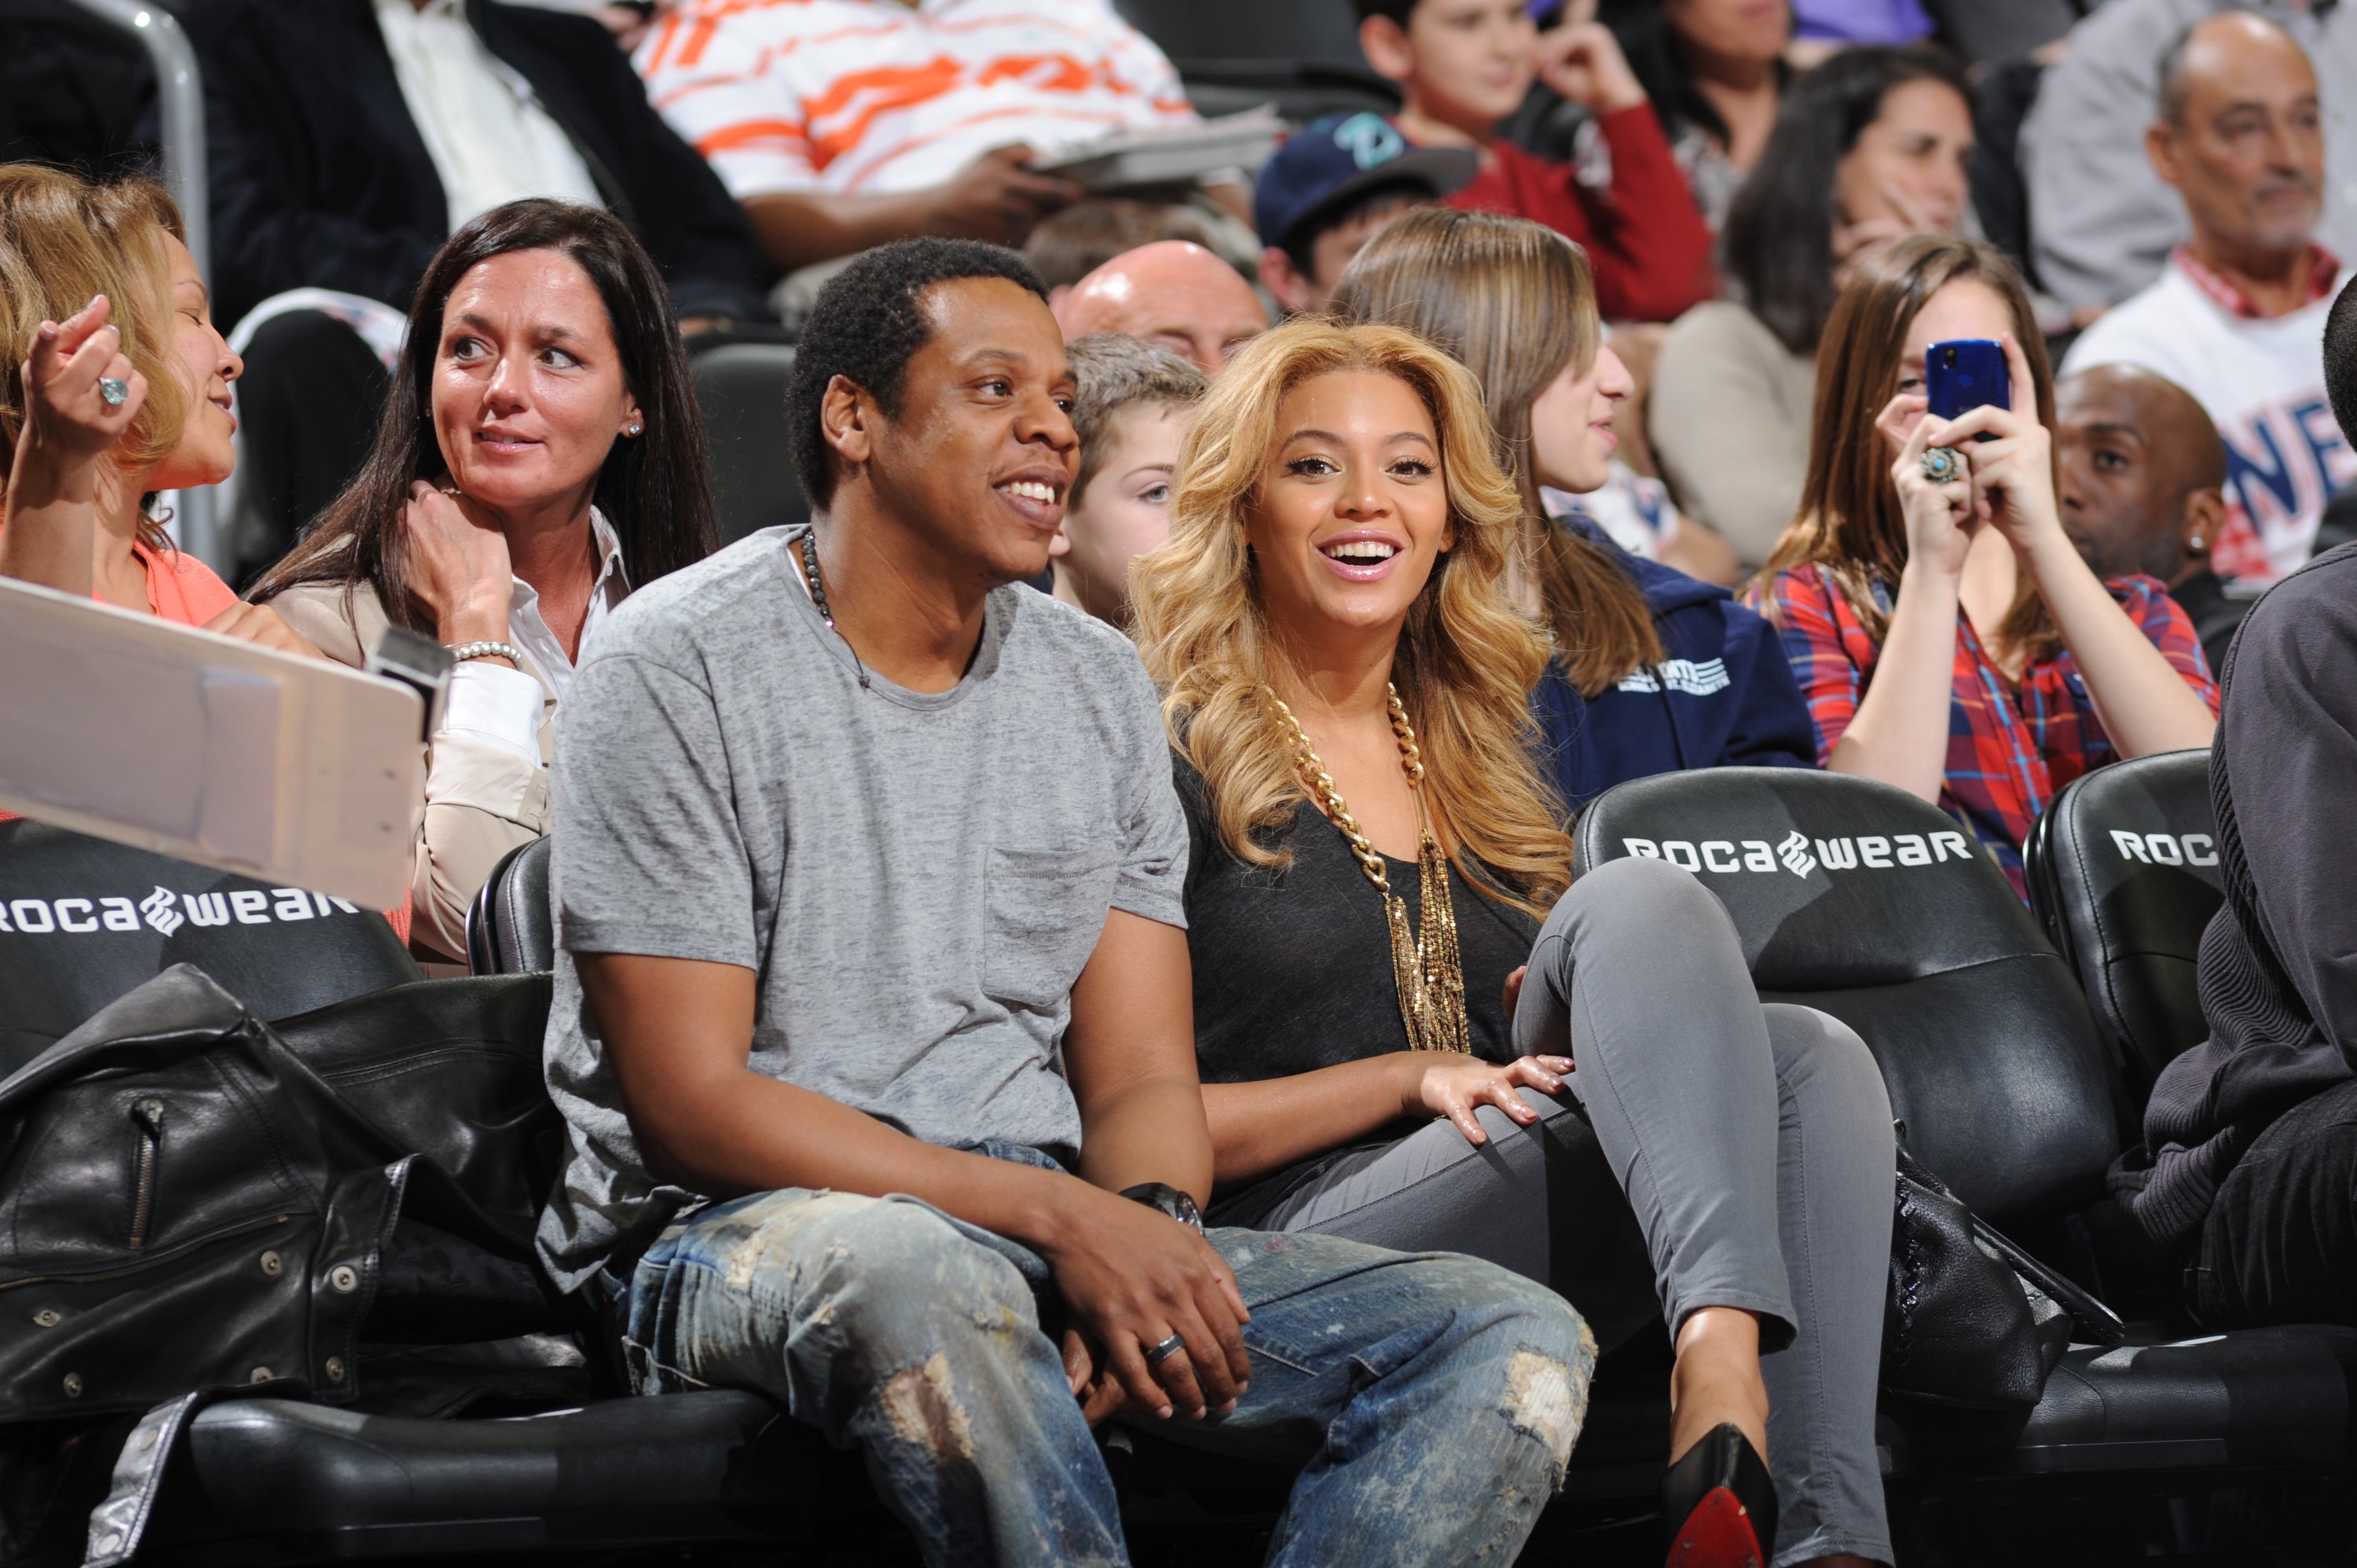 Fotos: Beyoncé e Jay Z assistem a jogo de basquete em NY - 03/11 